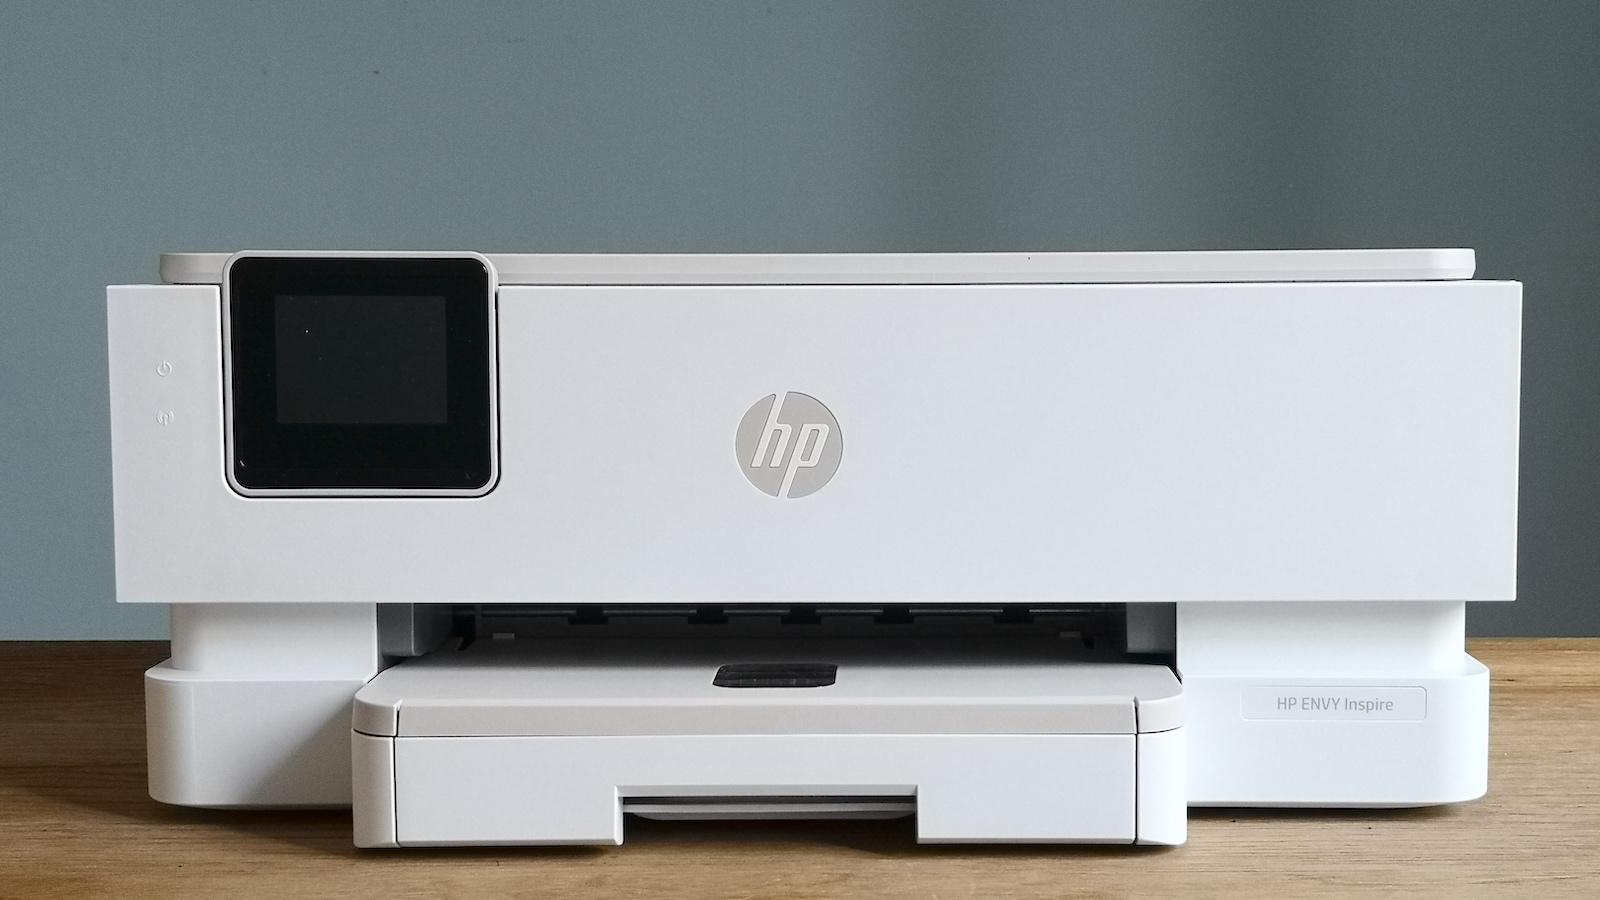 HP Envy Inspire 7220e - Beste compacte printer voor het hele gezin